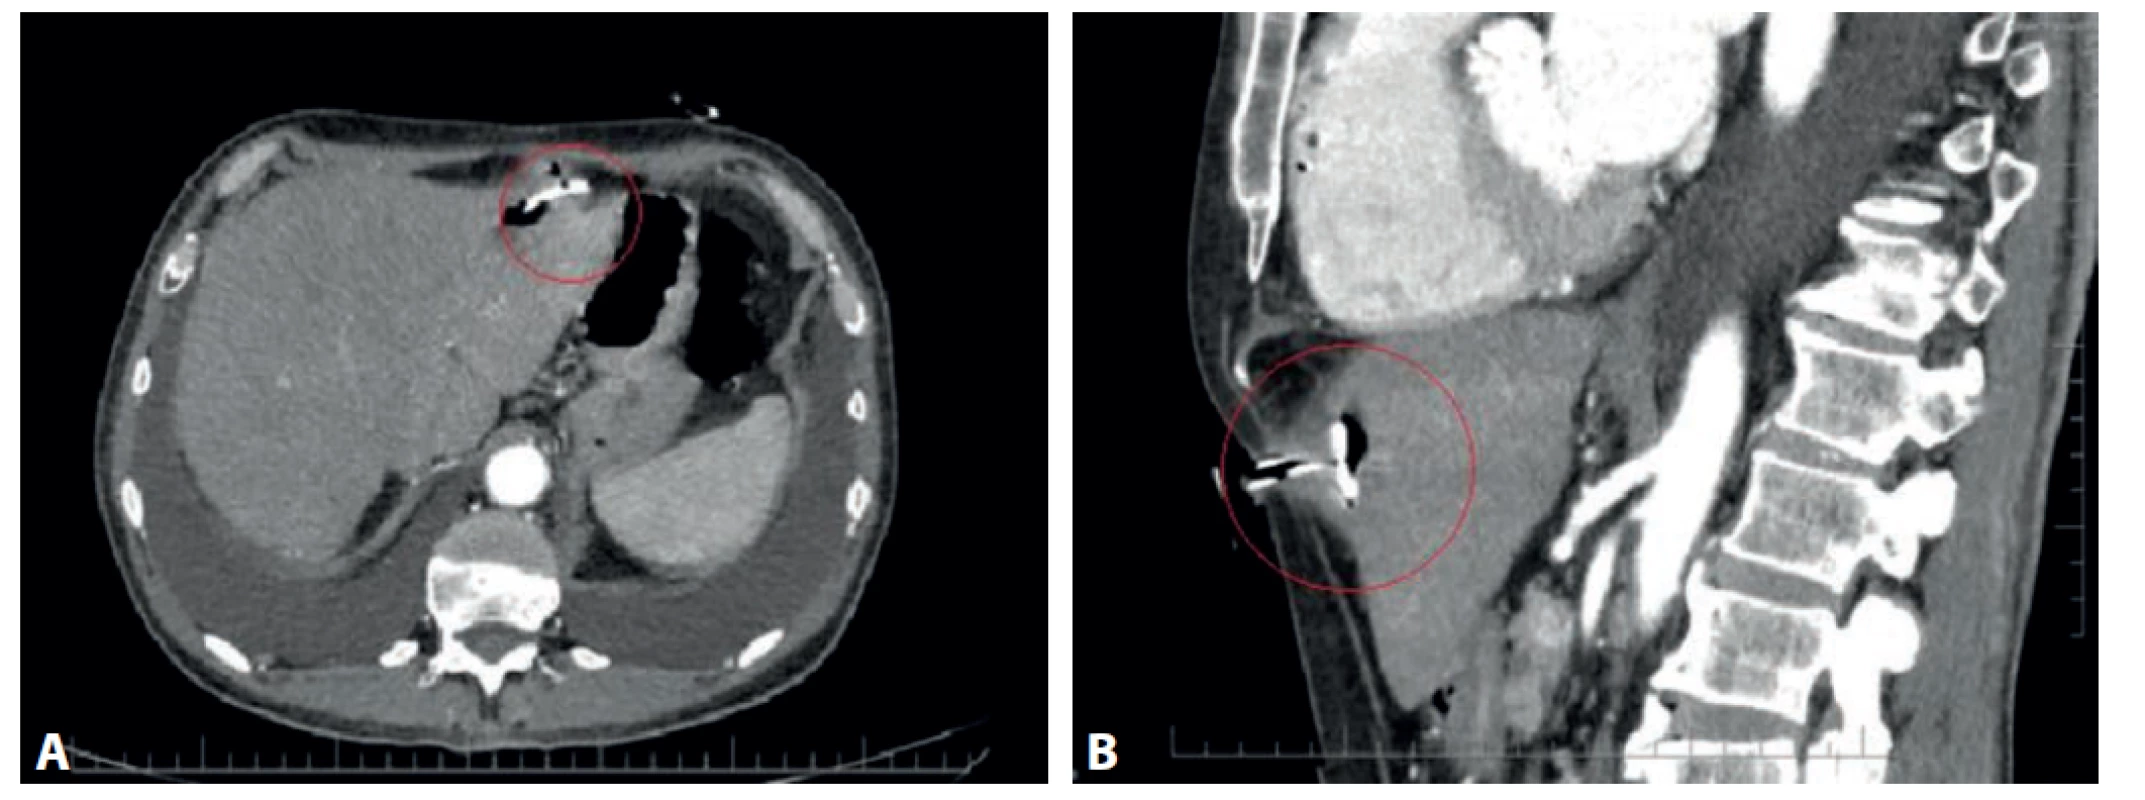 CT vyšetrenie s nálezom dislokovaného PEG a hepatálnym abscesom (červený krúžok):<br>
a) axiálna projekcia, b) sagitálna projekcia<br>
Fig. 1. CT scan with PEG dislocation and hepatic abscess (red circle):<br>
a) axial projection, b) sagittal projection